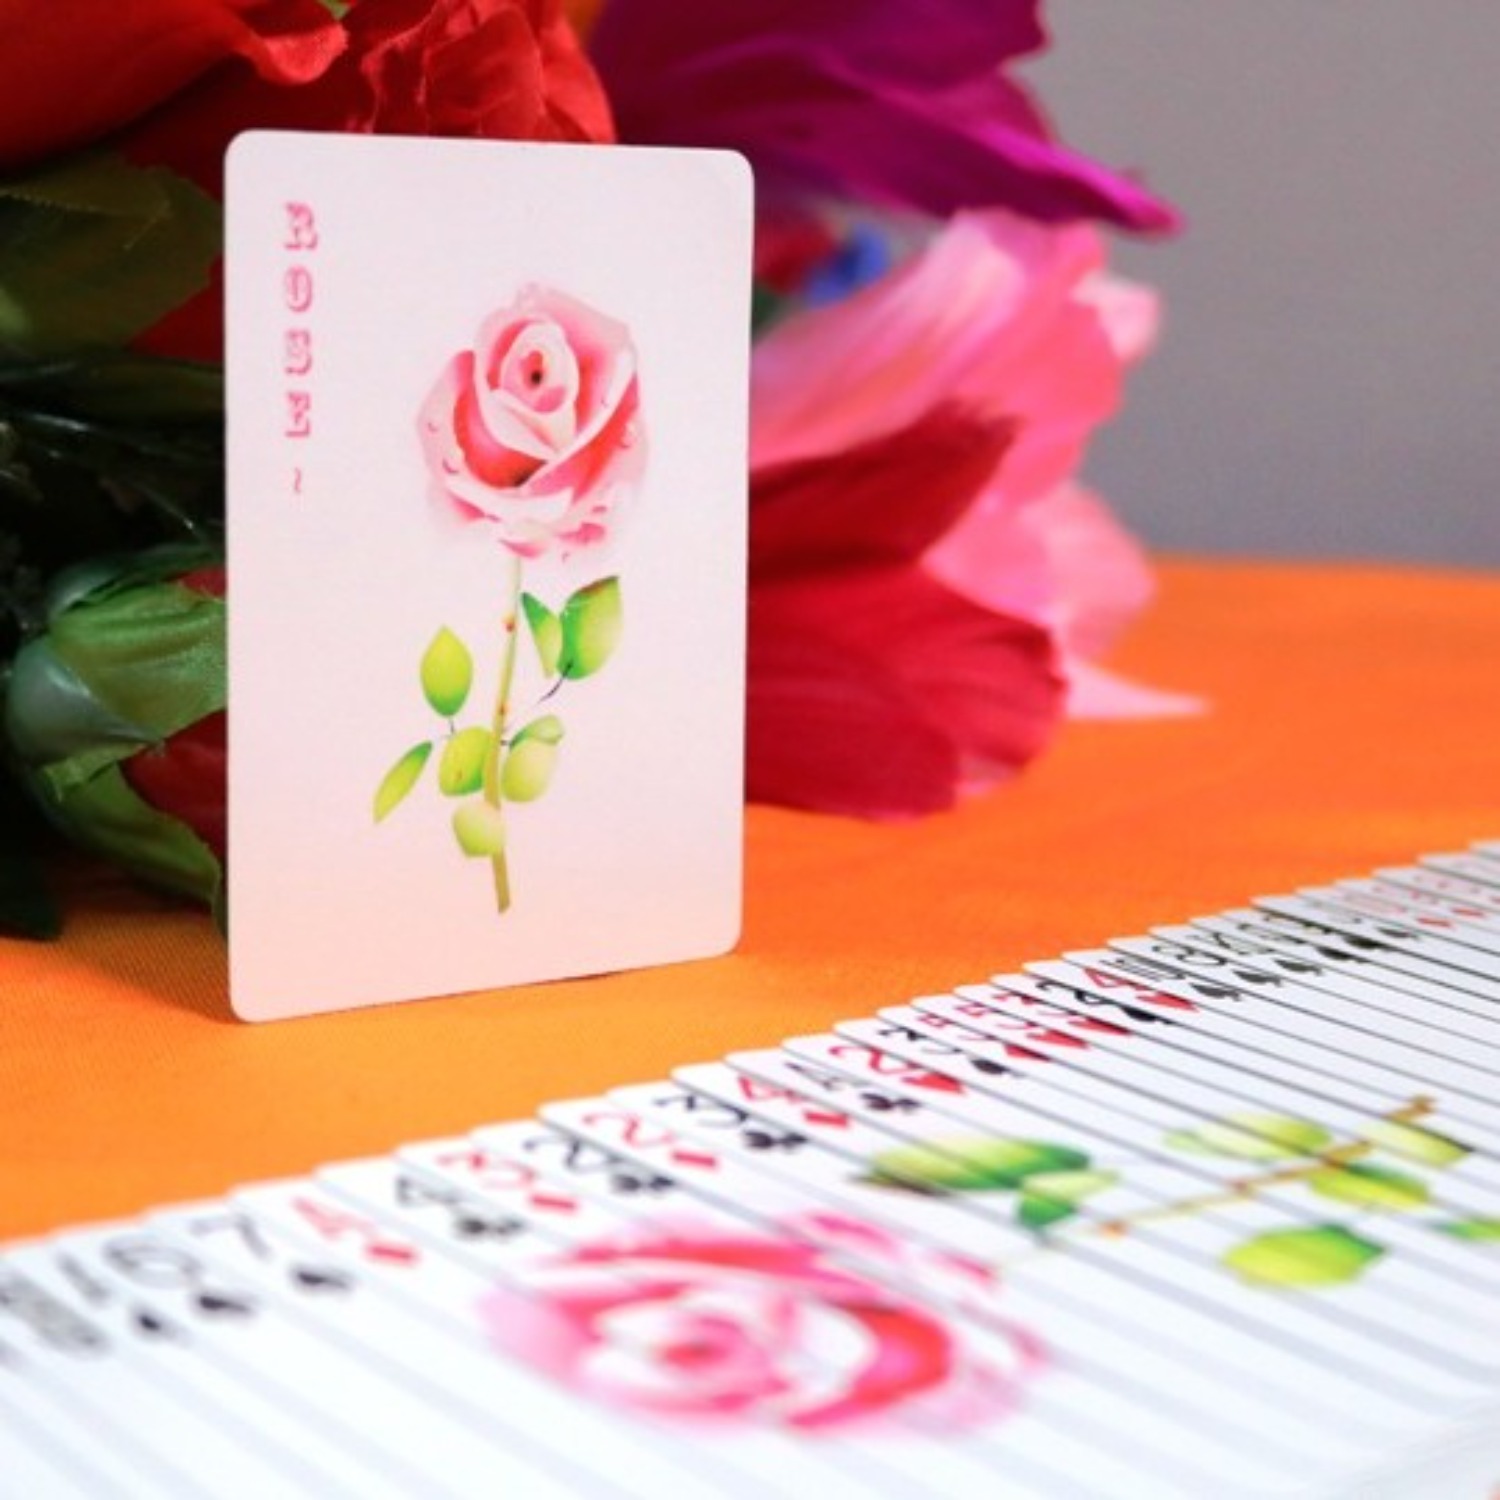 [로즈프롬 어 카드] 아름다운 장미를 선사하십시오.